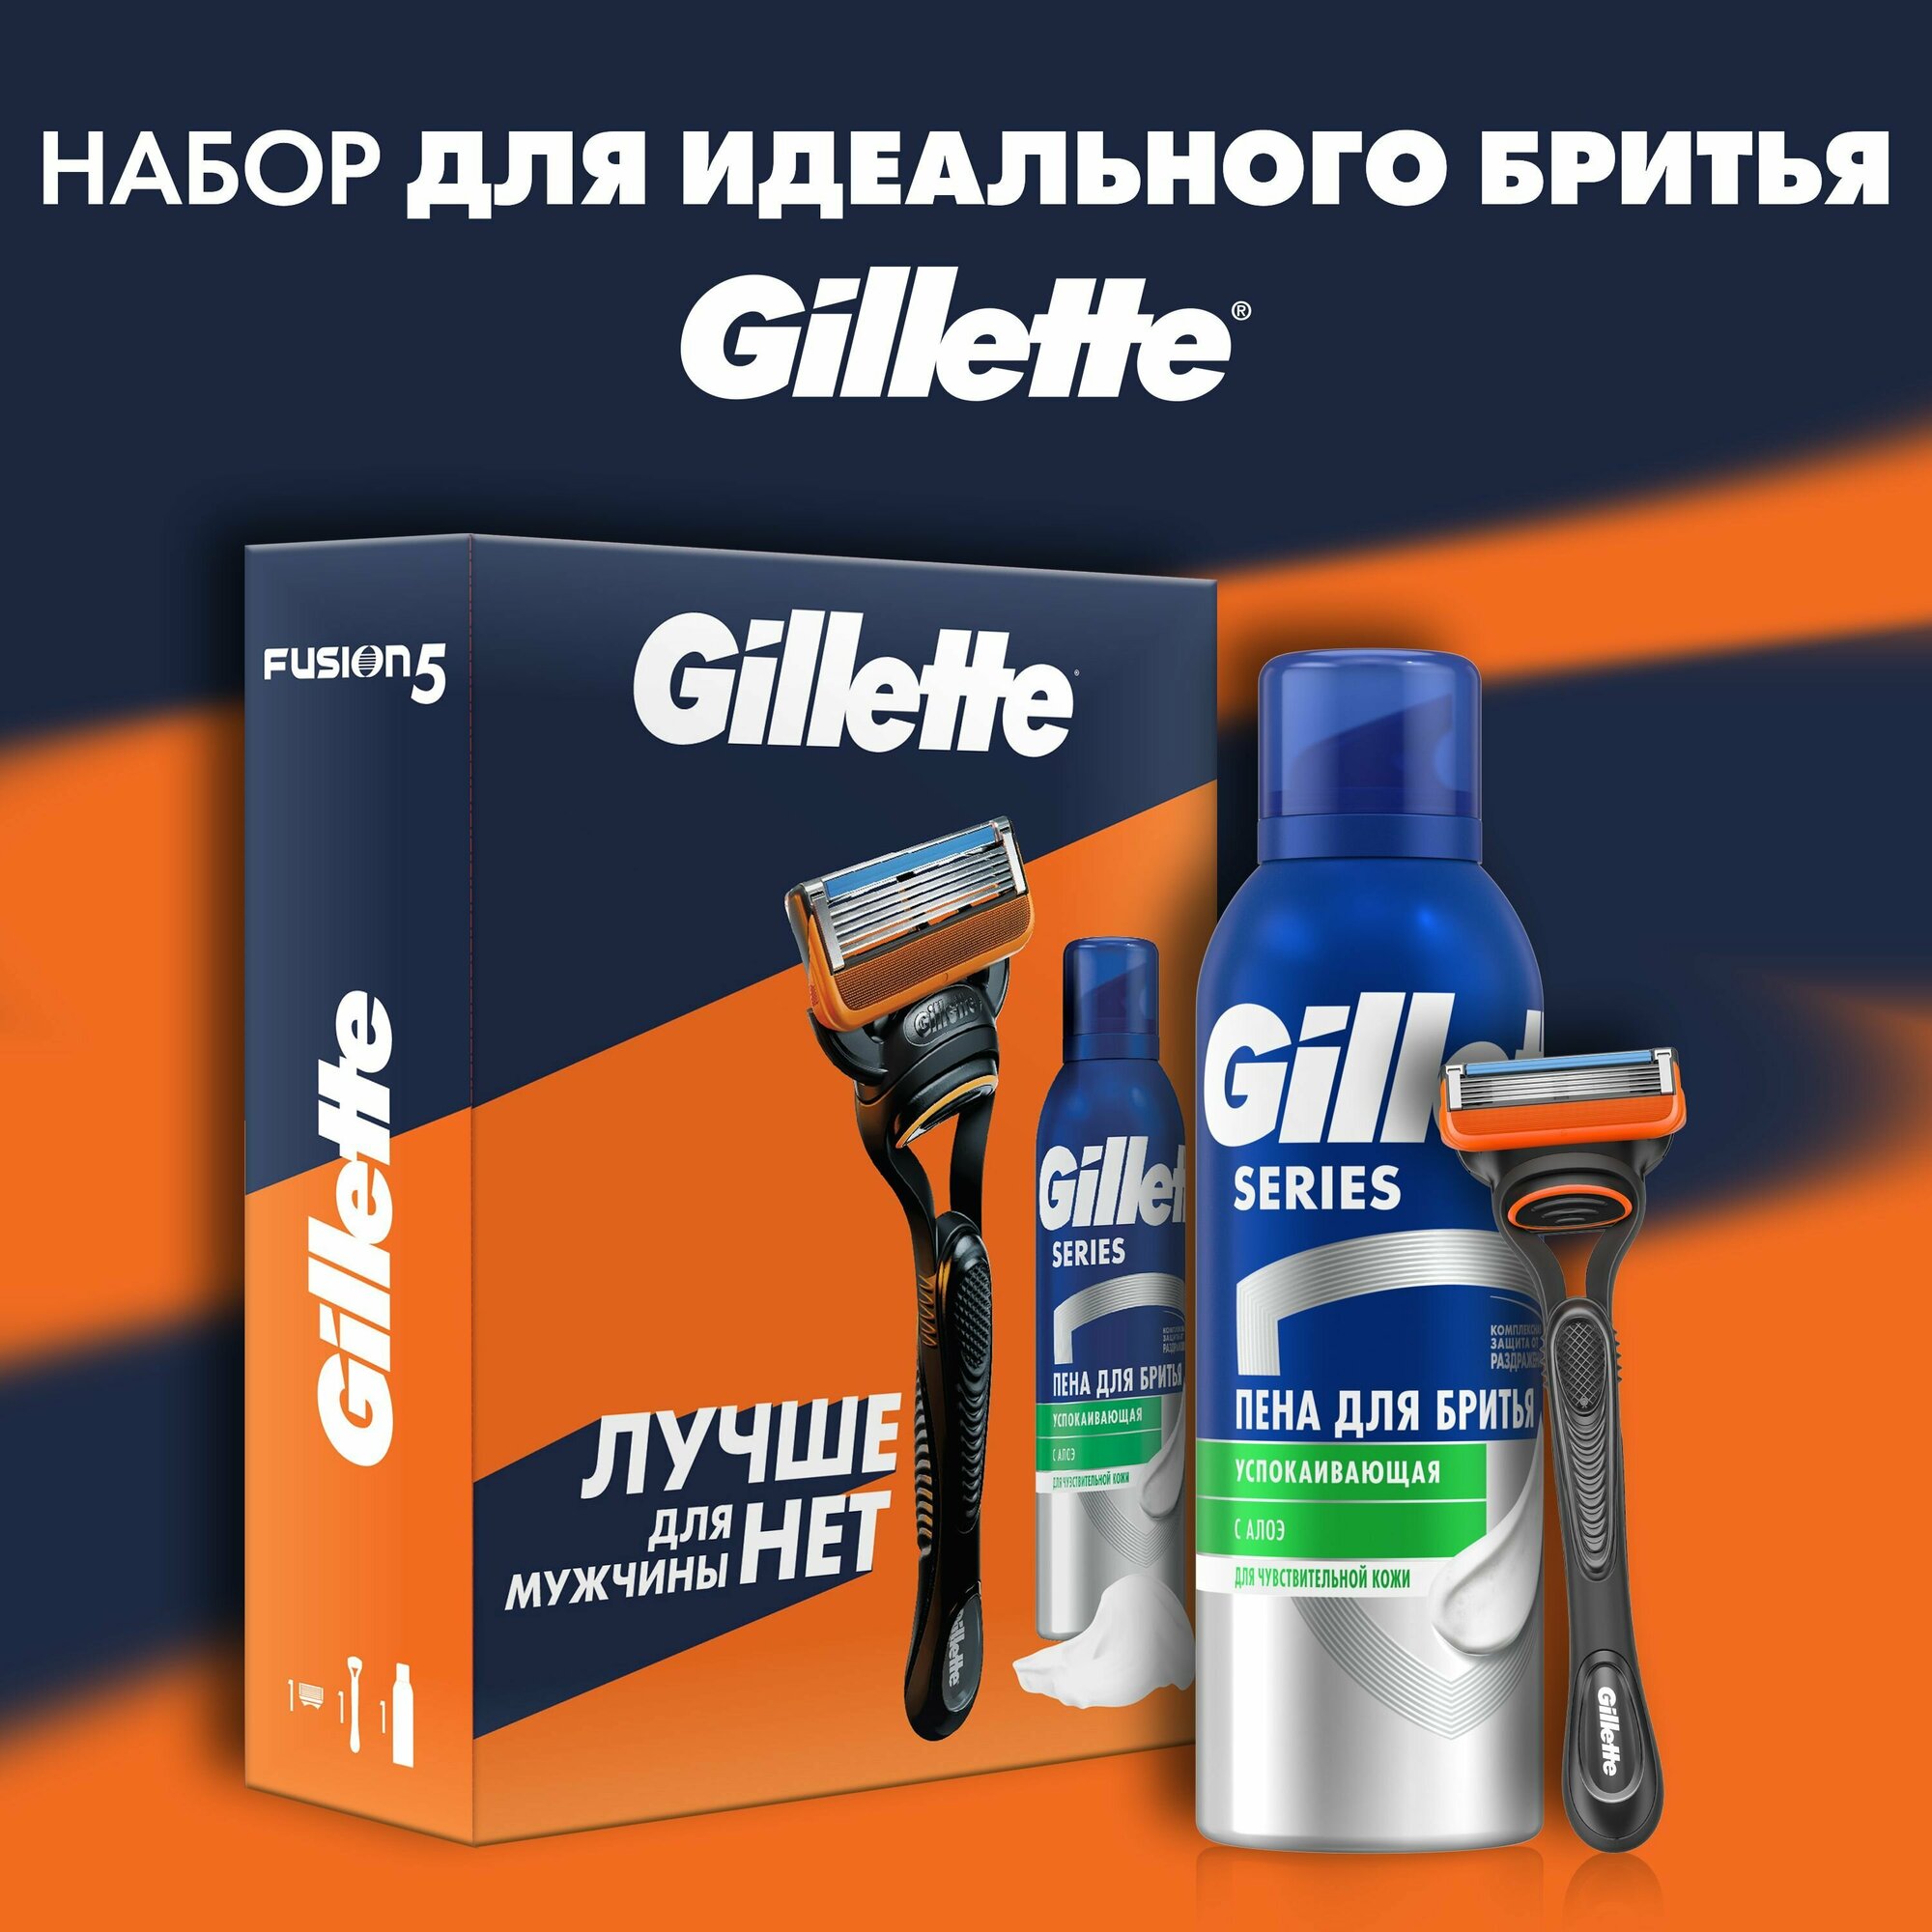 Подарочный набор для мужчины Gillette Fusion5 бритва и пена для бритья, 200 мл - фото №3